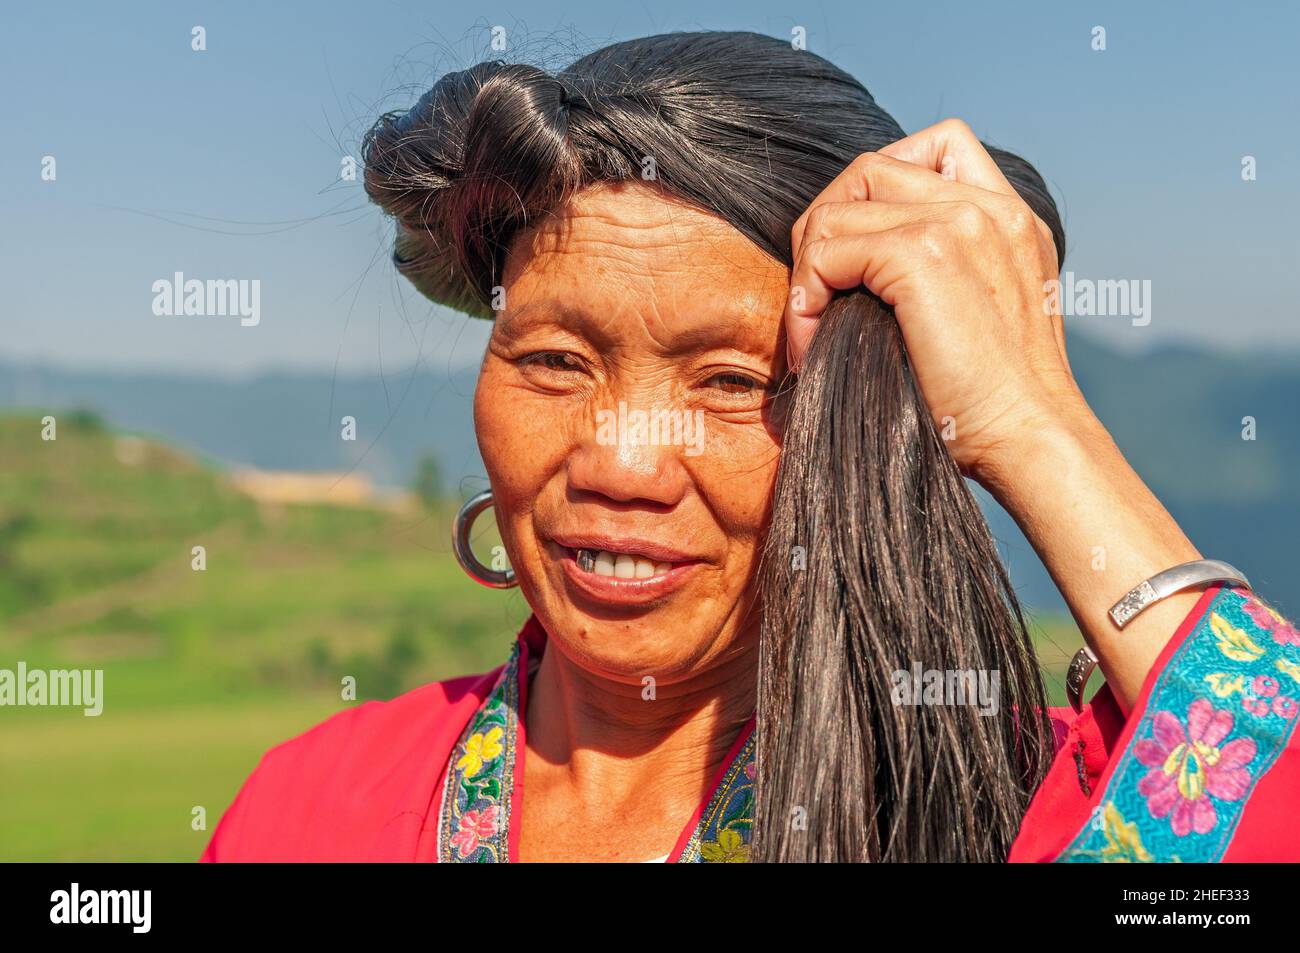 Portrait de femme souriante à poil long du groupe ethnique Yao par les terrasses de riz Longsheng Ping an, province de Guangxi, Chine. Banque D'Images